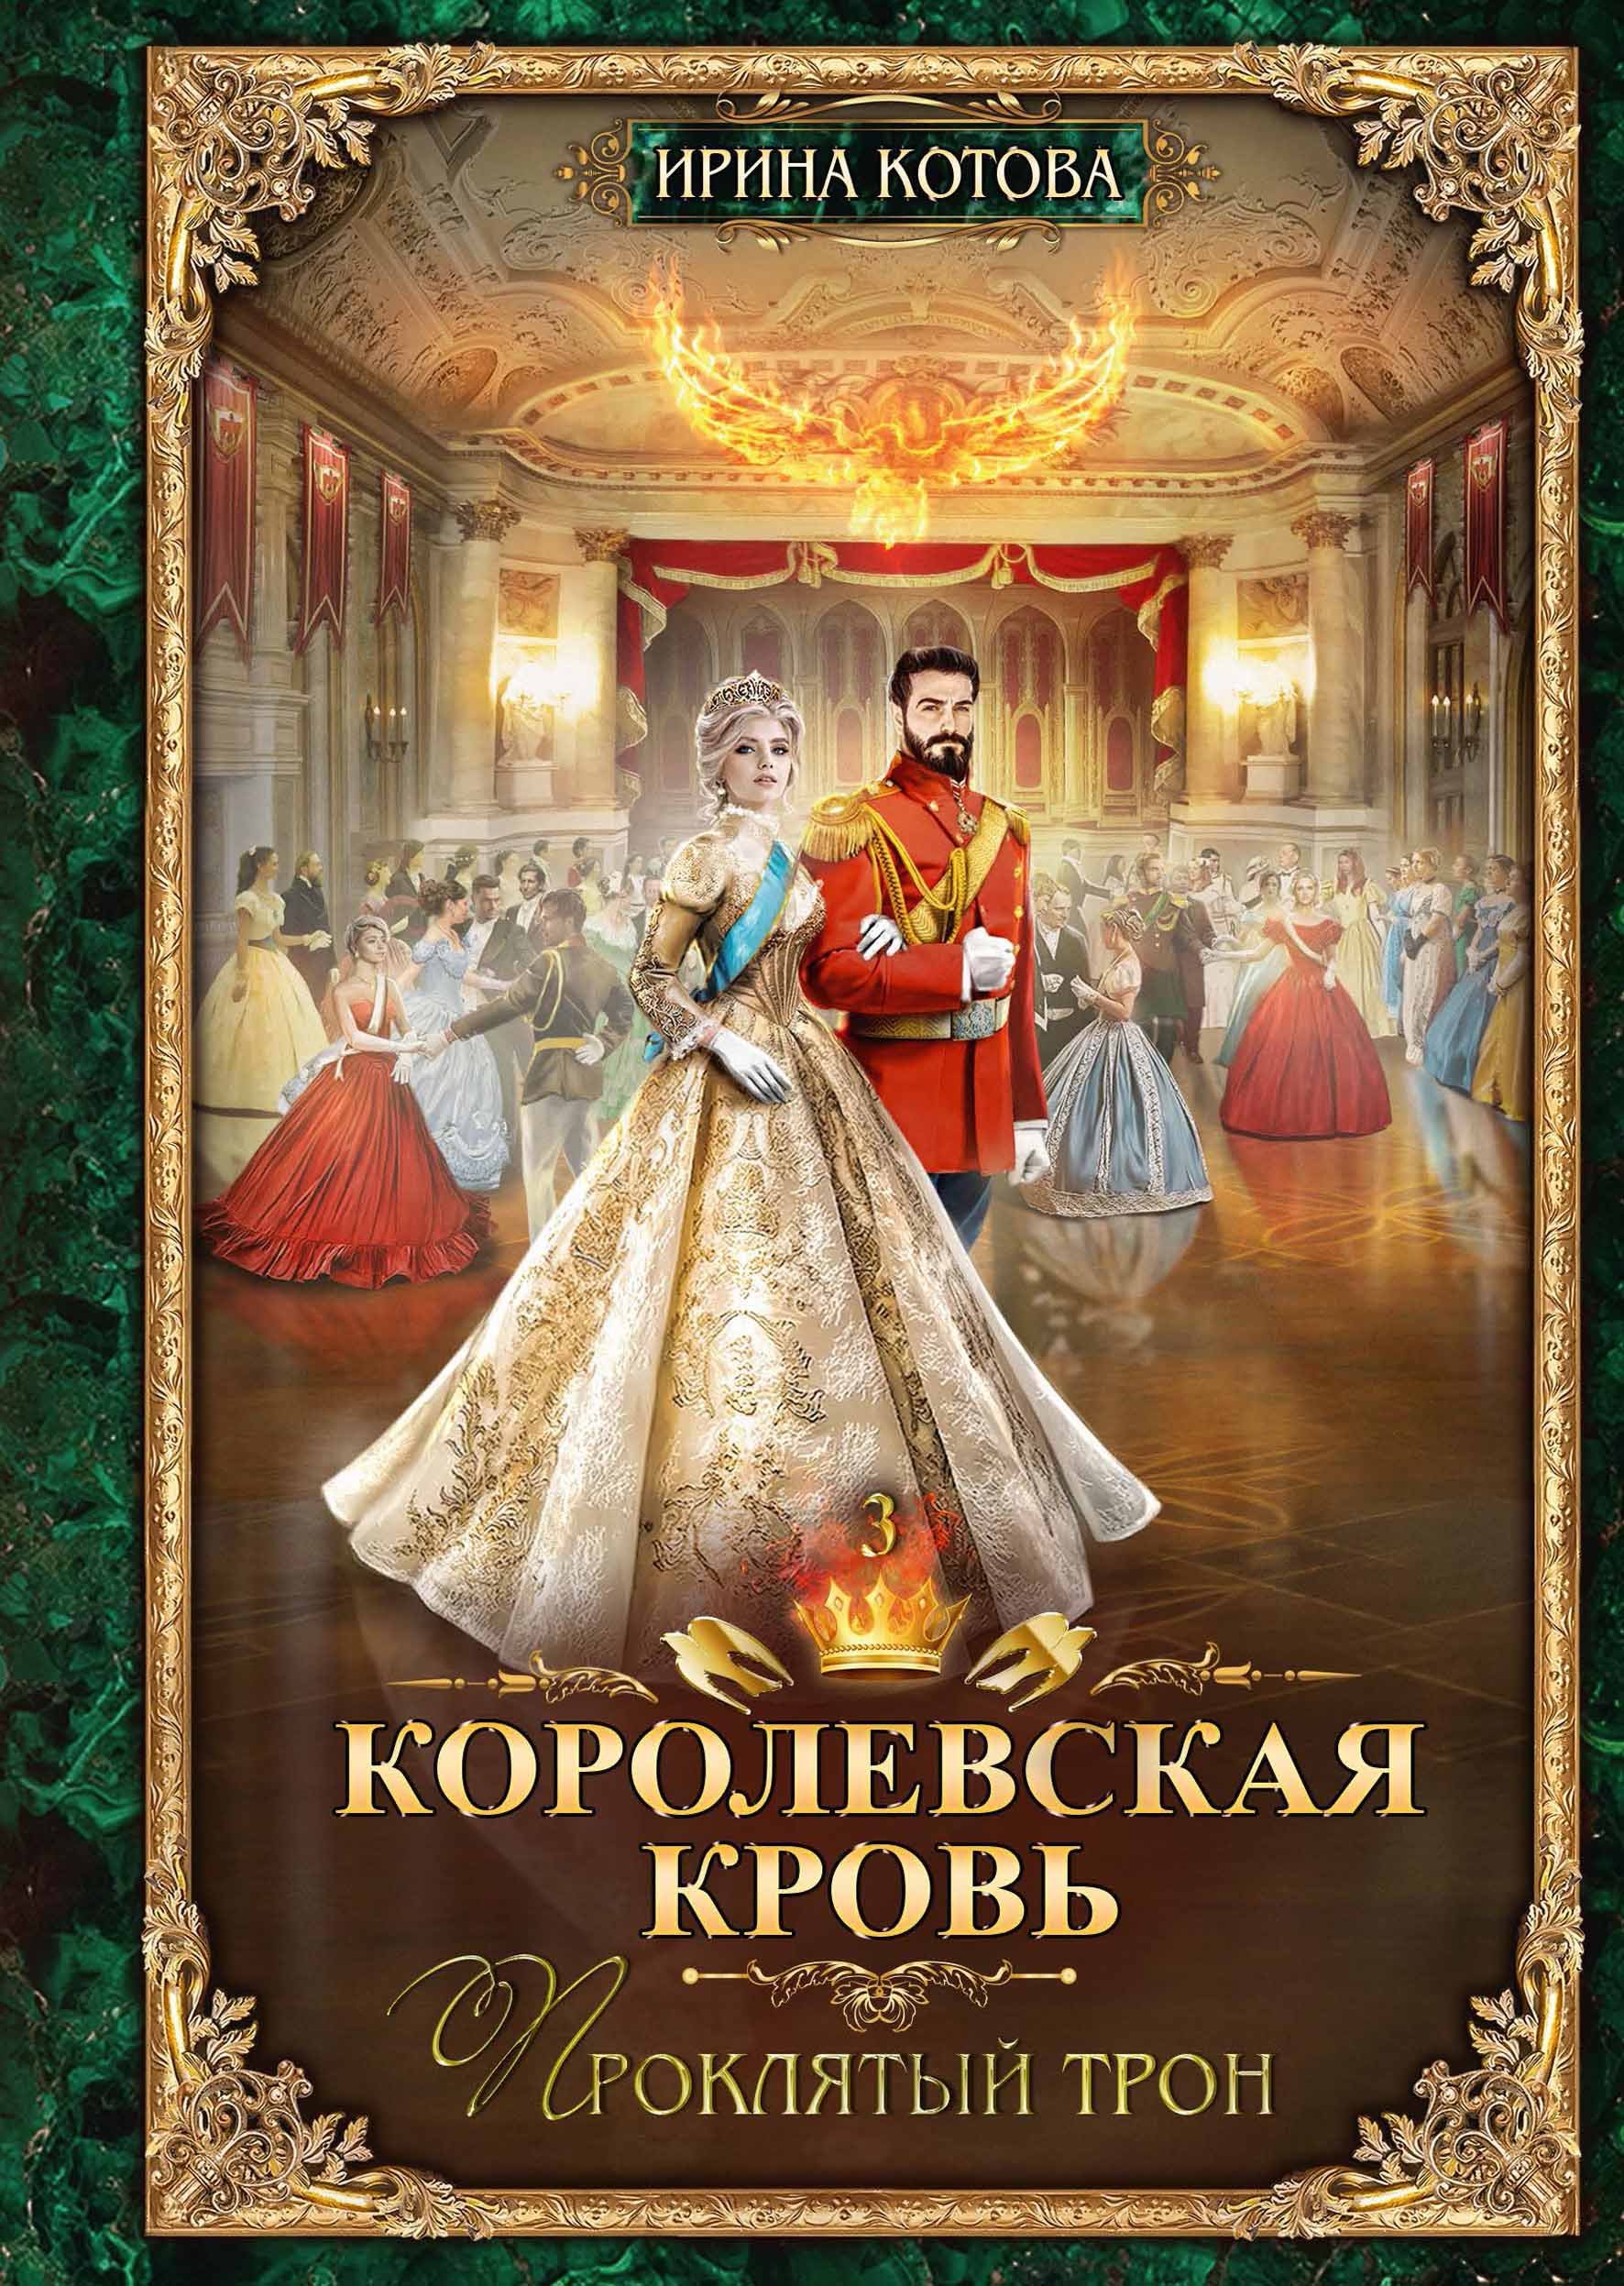 Котова Ирина Владимировна - Королевская кровь - 3: Проклятый трон